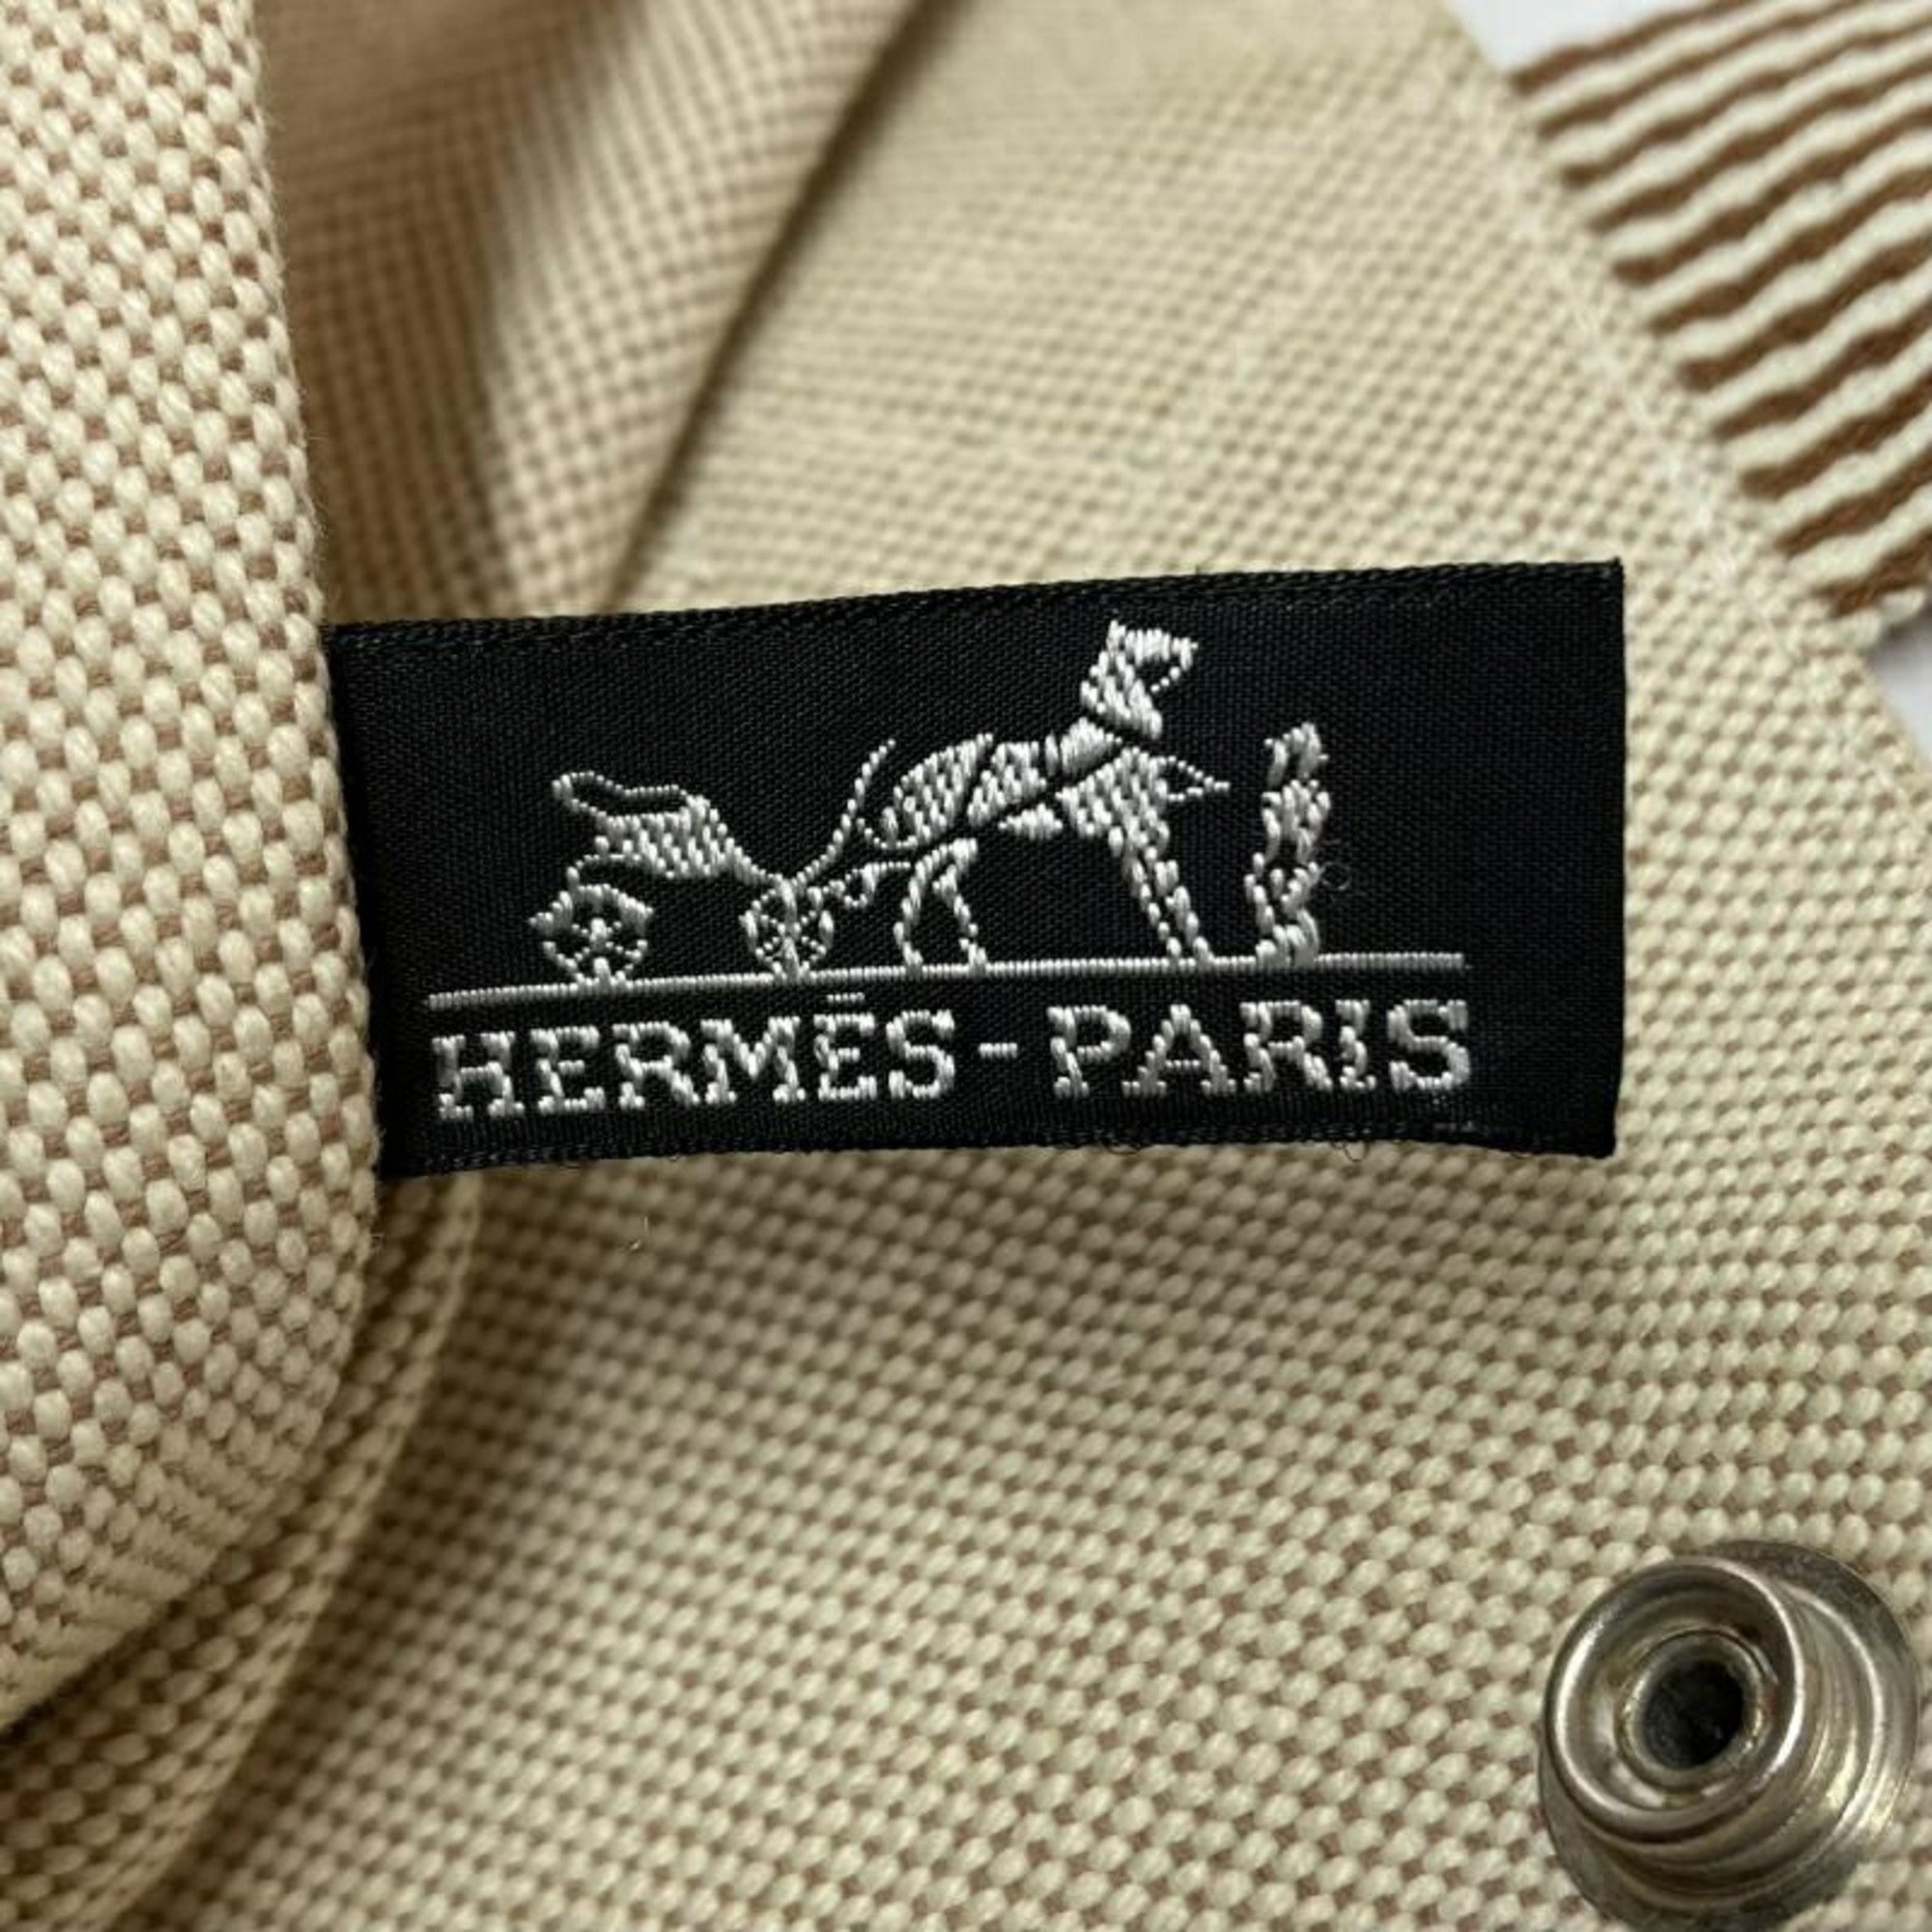 HERMES New Foult Cabas Hermes Beige x Brown Tote Bag Handbag